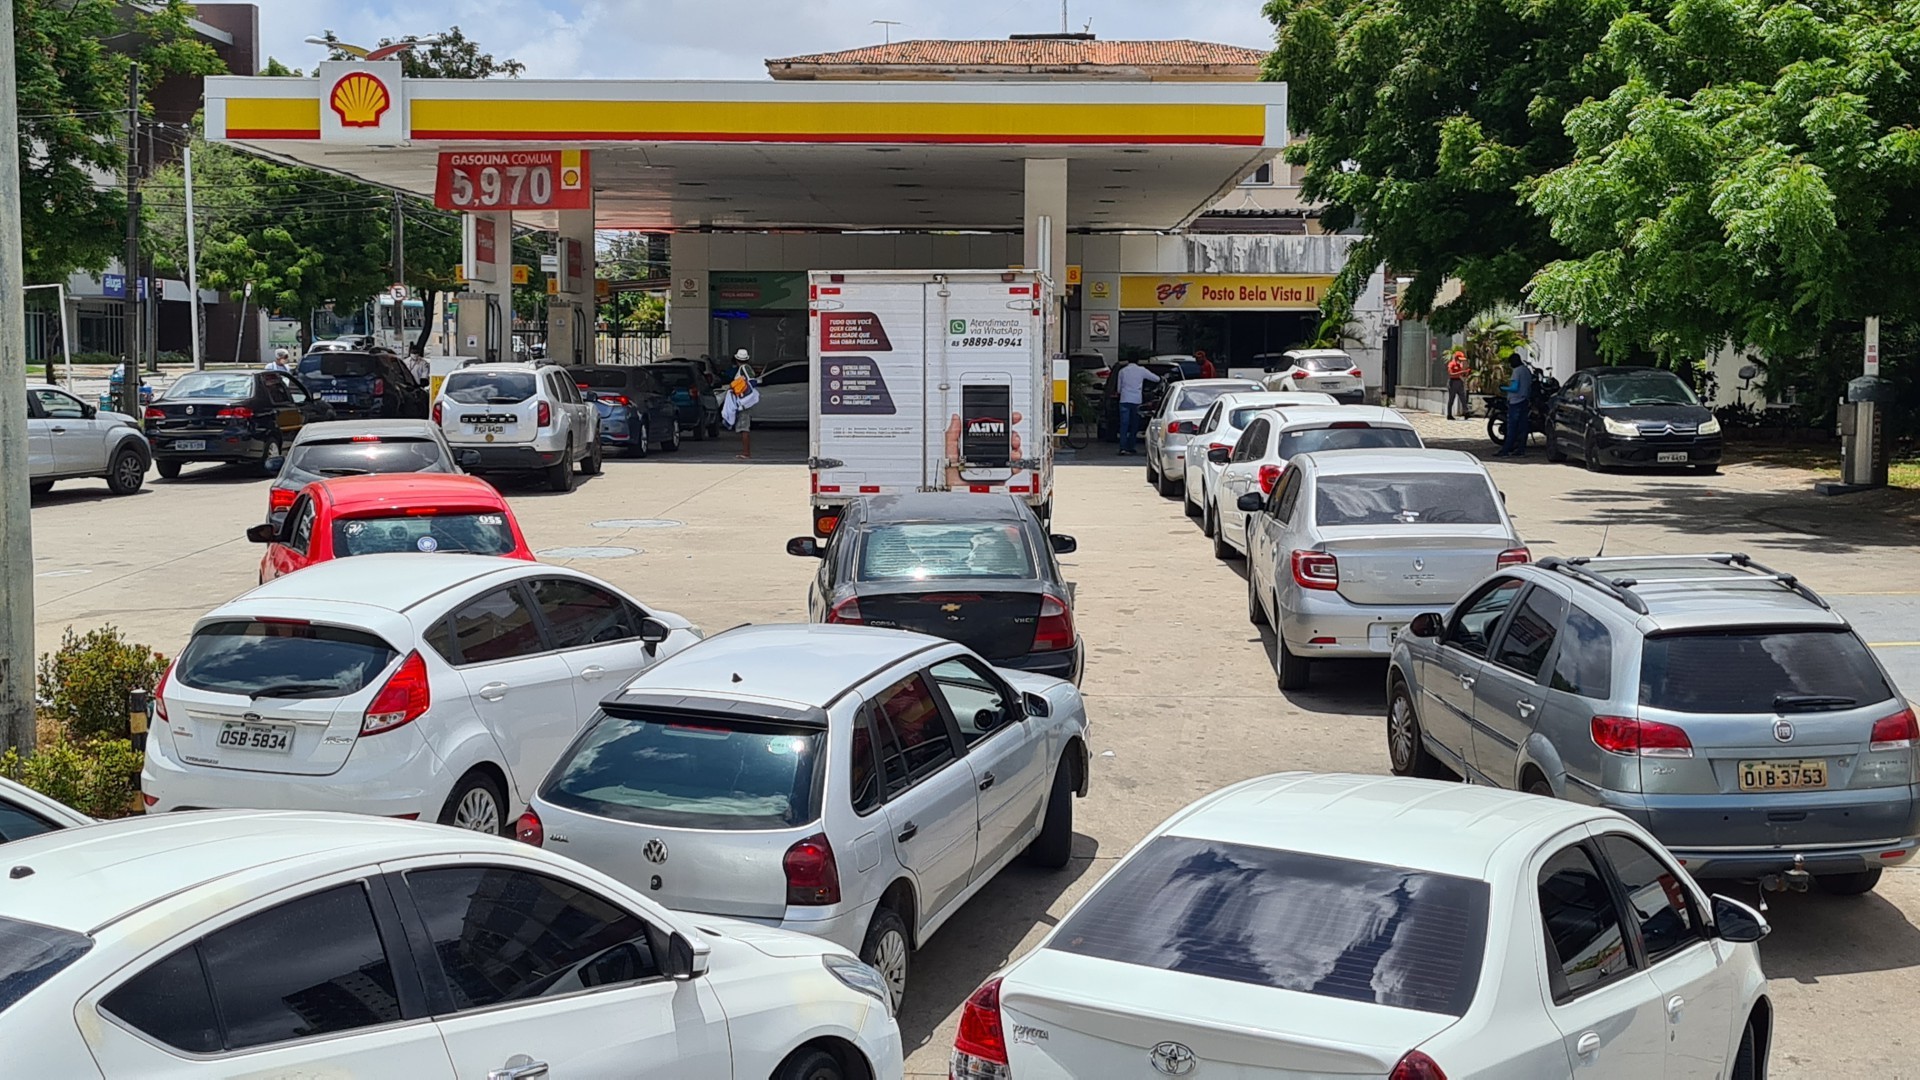 ￼Posto com gasolina a R$ 5,97 registra fila e trânsito intenso de motoristas tentando abastecer após litro do combustível bater R$ 7,10 no Ceará (Foto: Fco Fontenele)